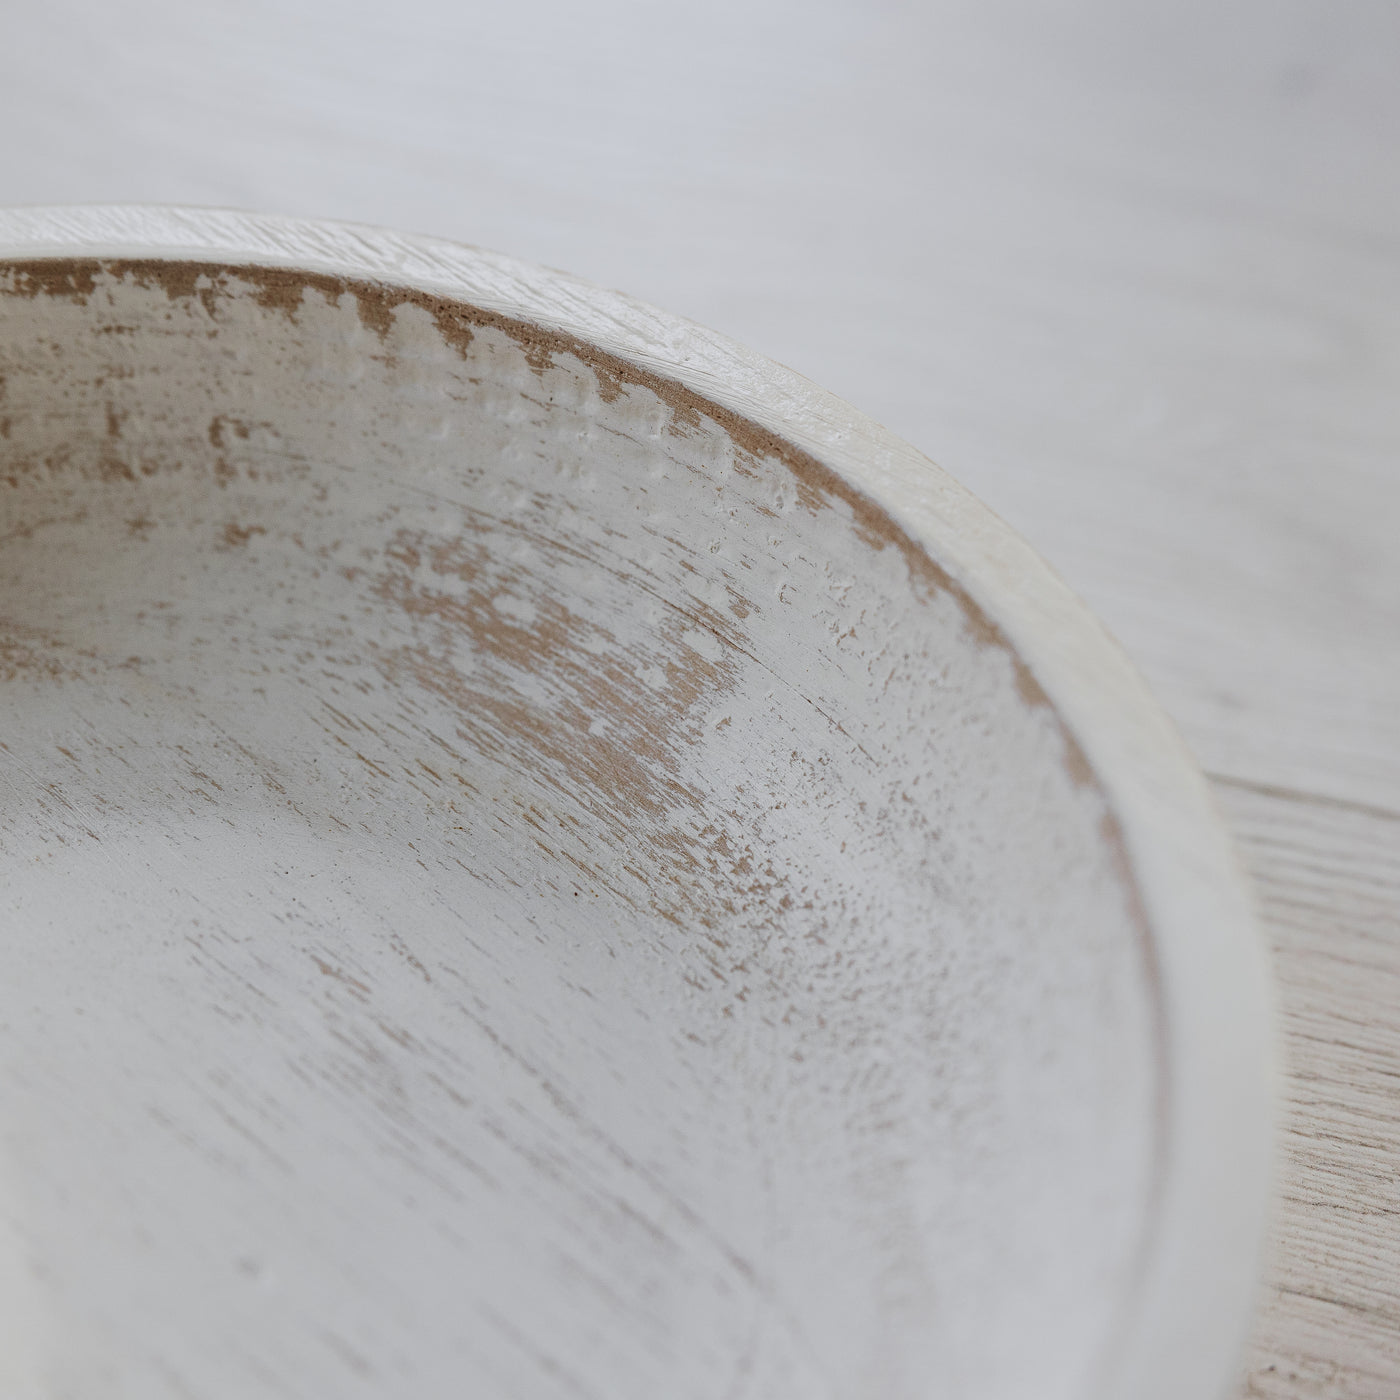 Whitewash Decorative Wood Bowl